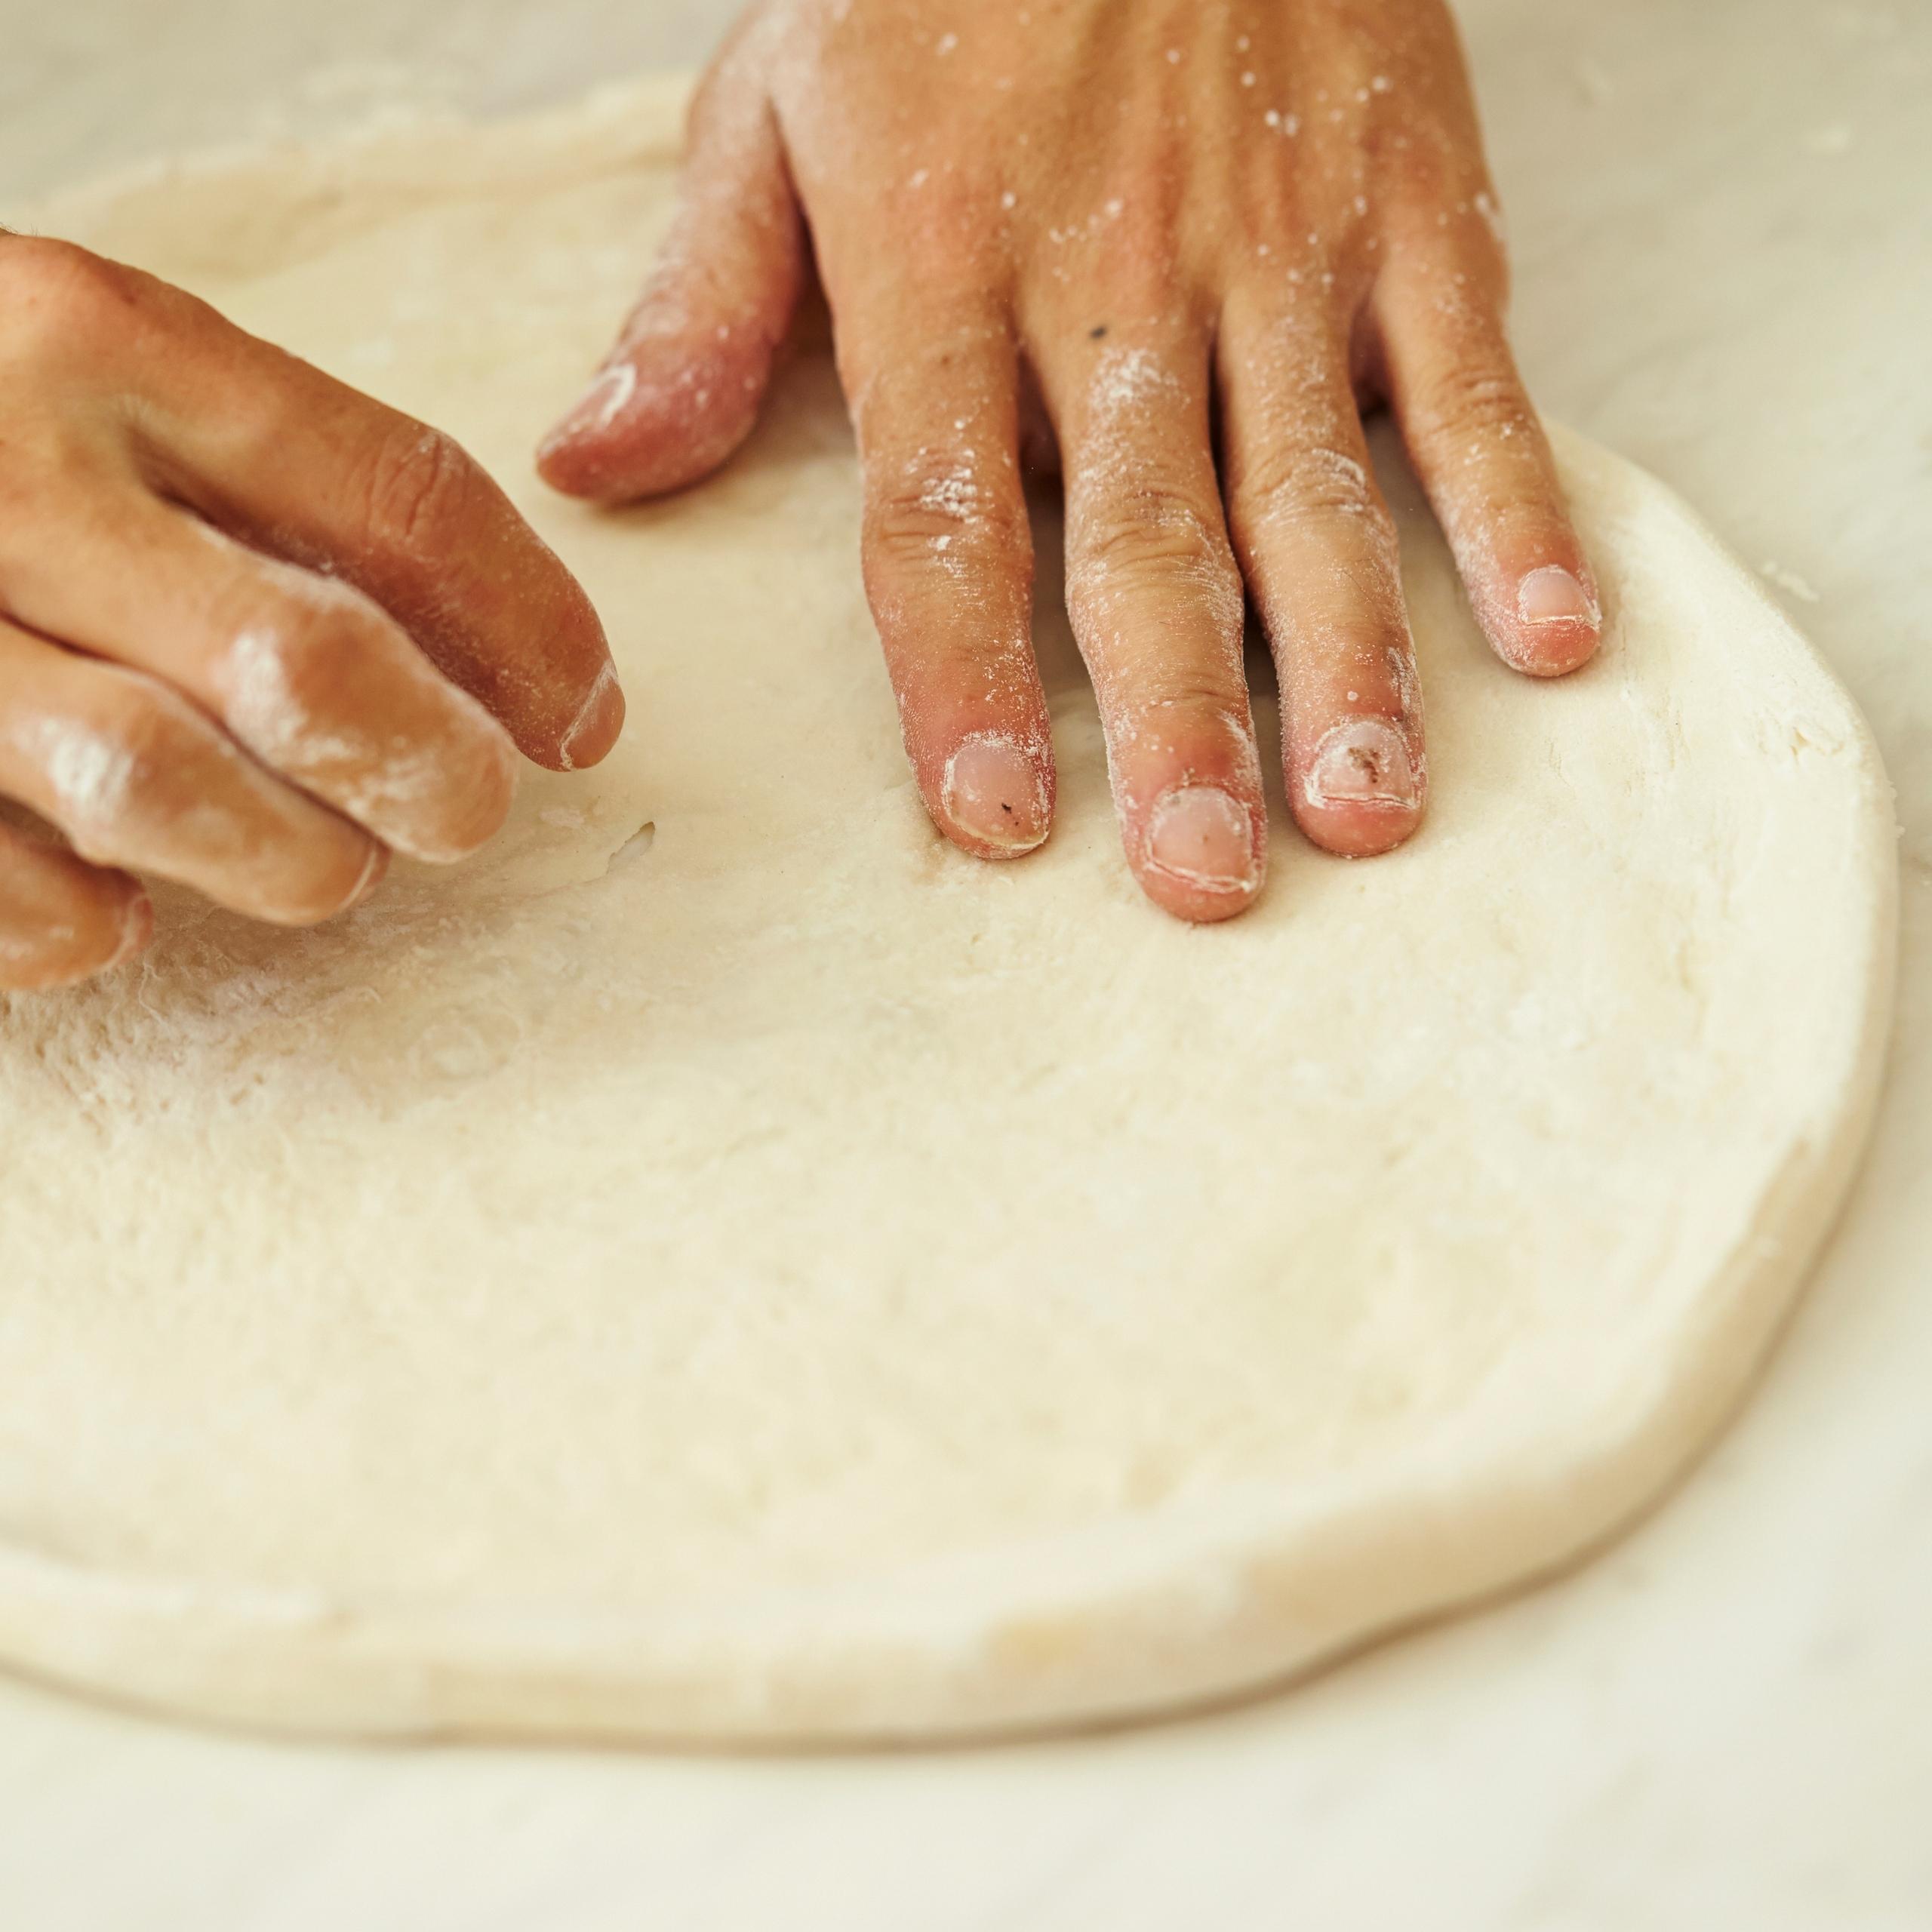 Stretch pizza dough